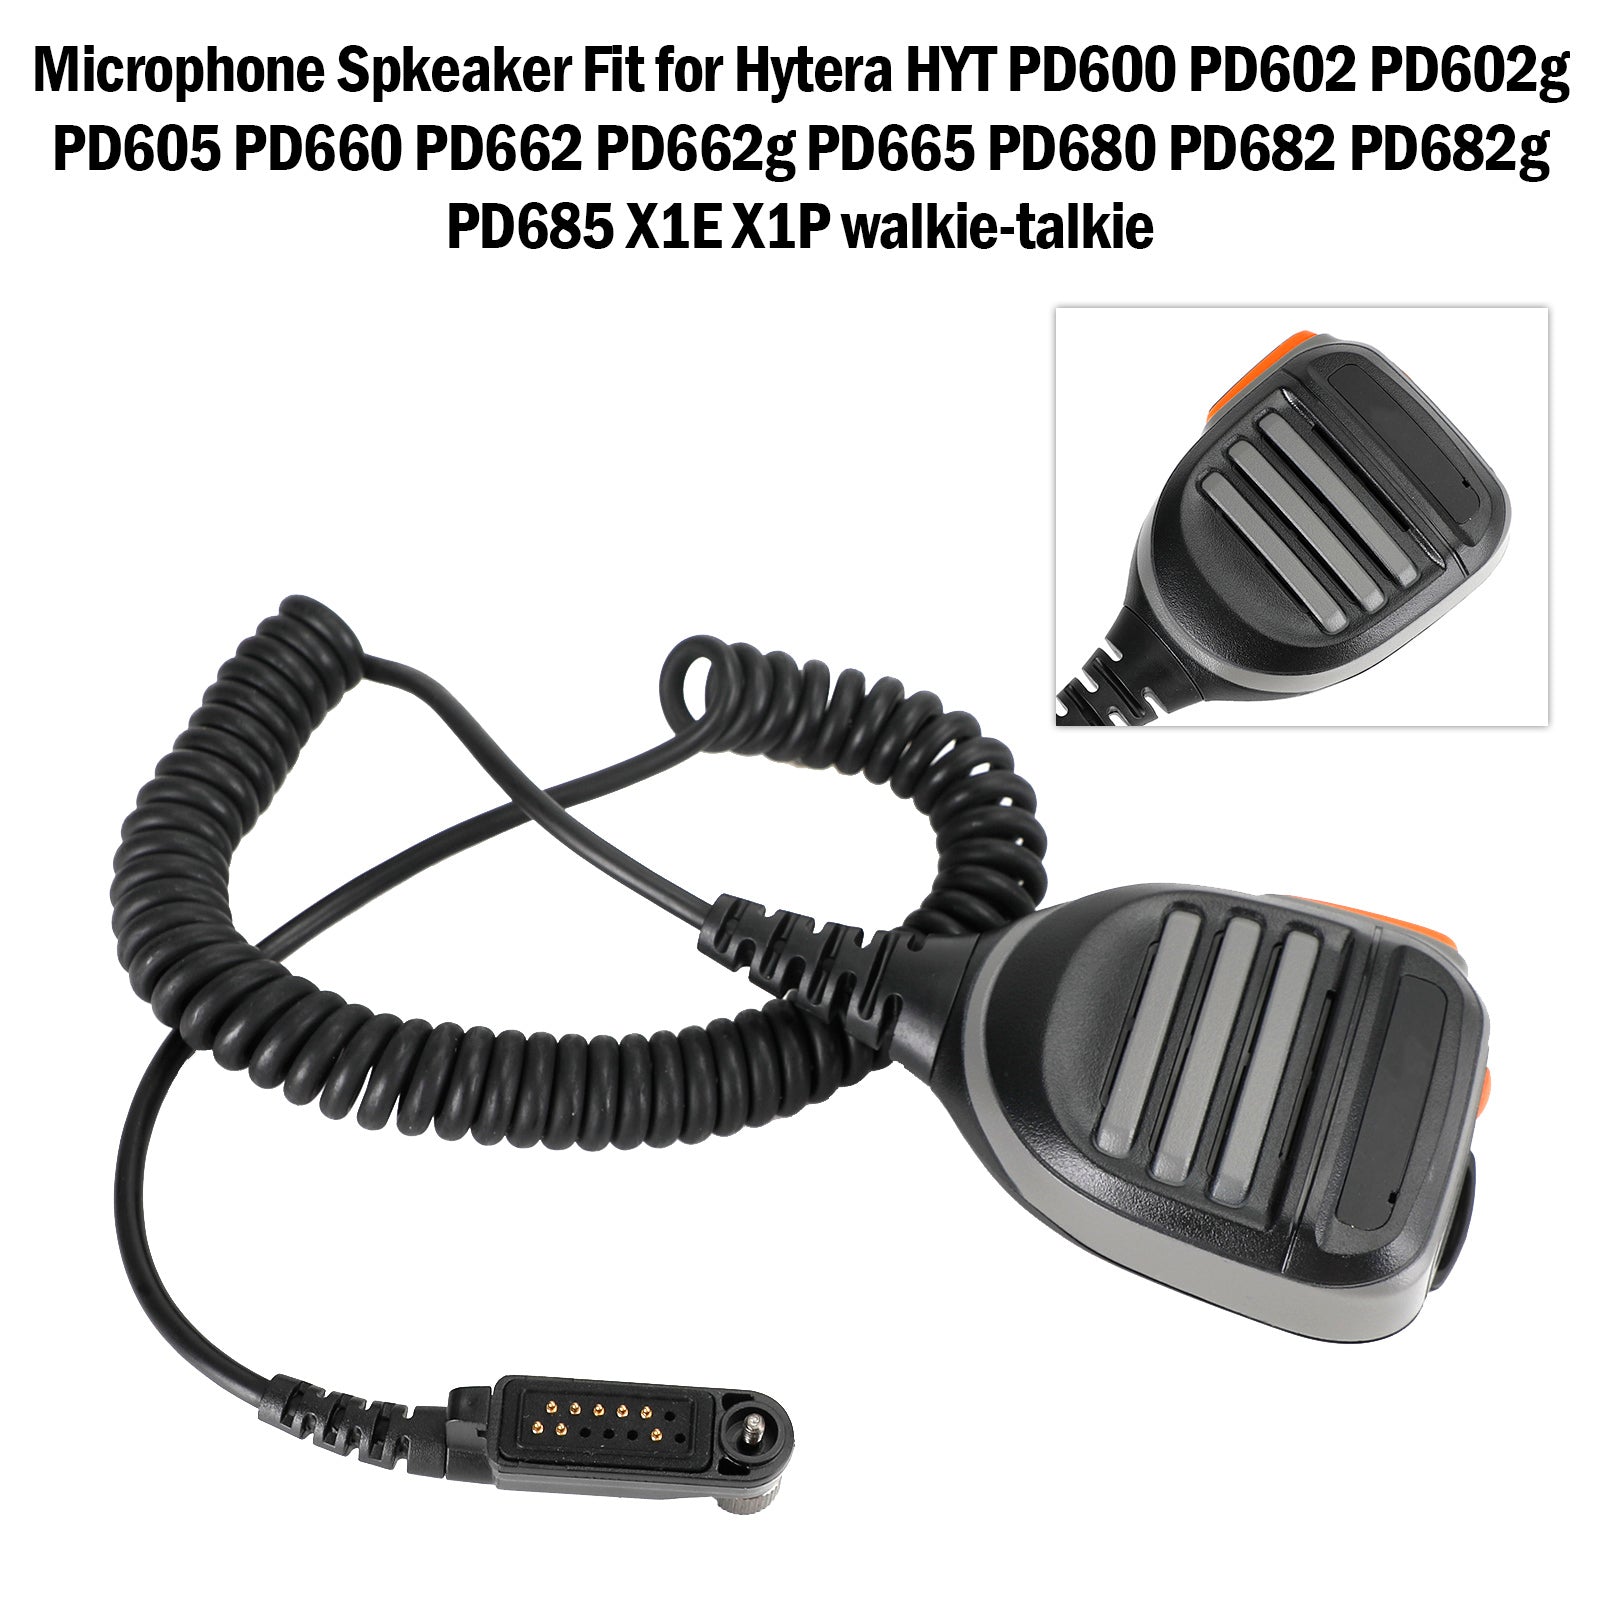 Haut-parleur de Microphone X1E-SM10, pour Hytera PD660 PD662 PD665 PD680 PD682 PD685 X1P